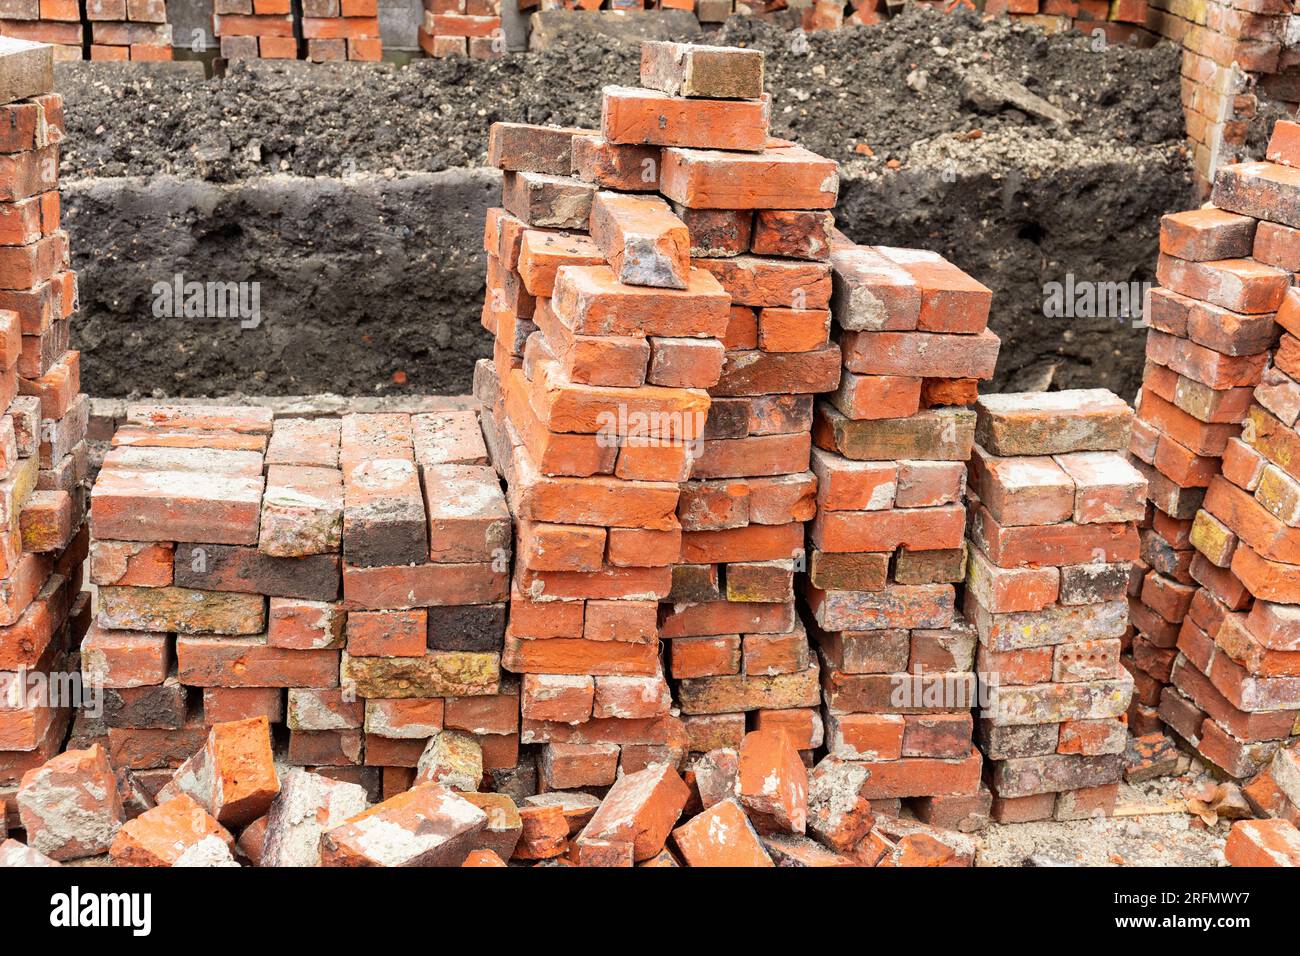 Pile de vieilles briques rouges à réutiliser comme matériau de construction pour la construction, Angleterre, Royaume-Uni Banque D'Images